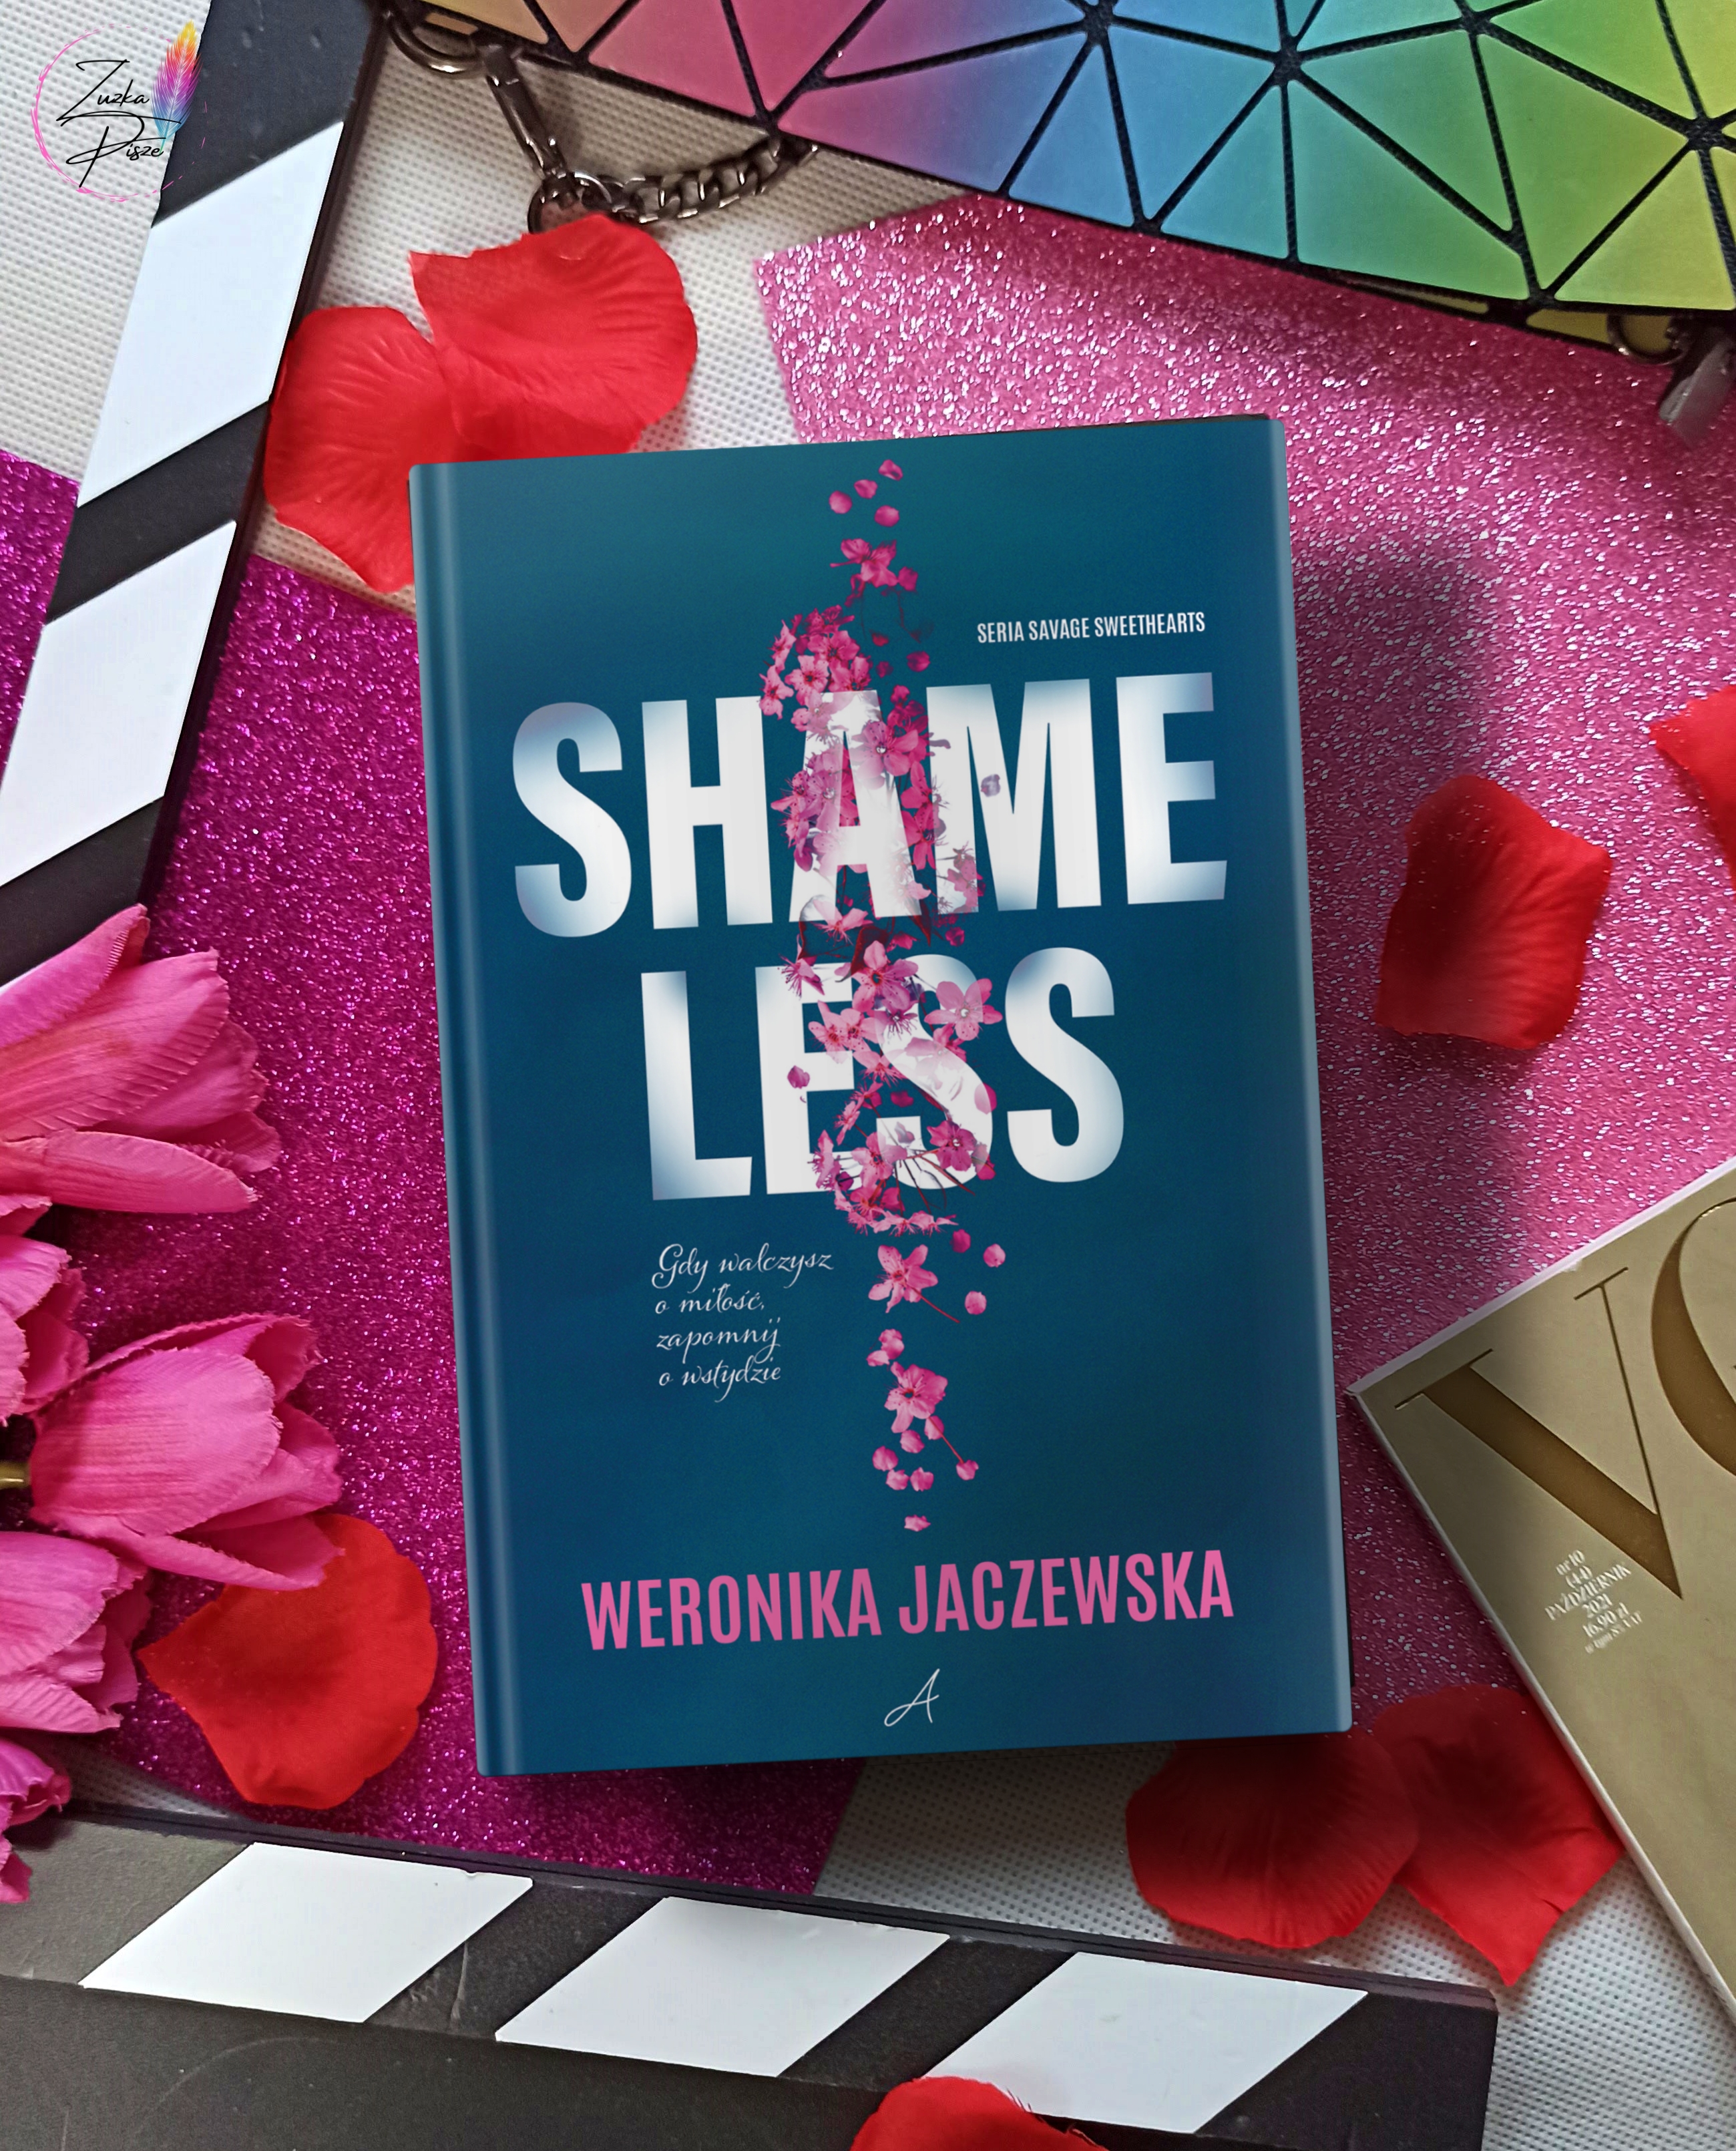 Weronika Jaczewska "Shameless" - premierowa patronacka recenzja książki